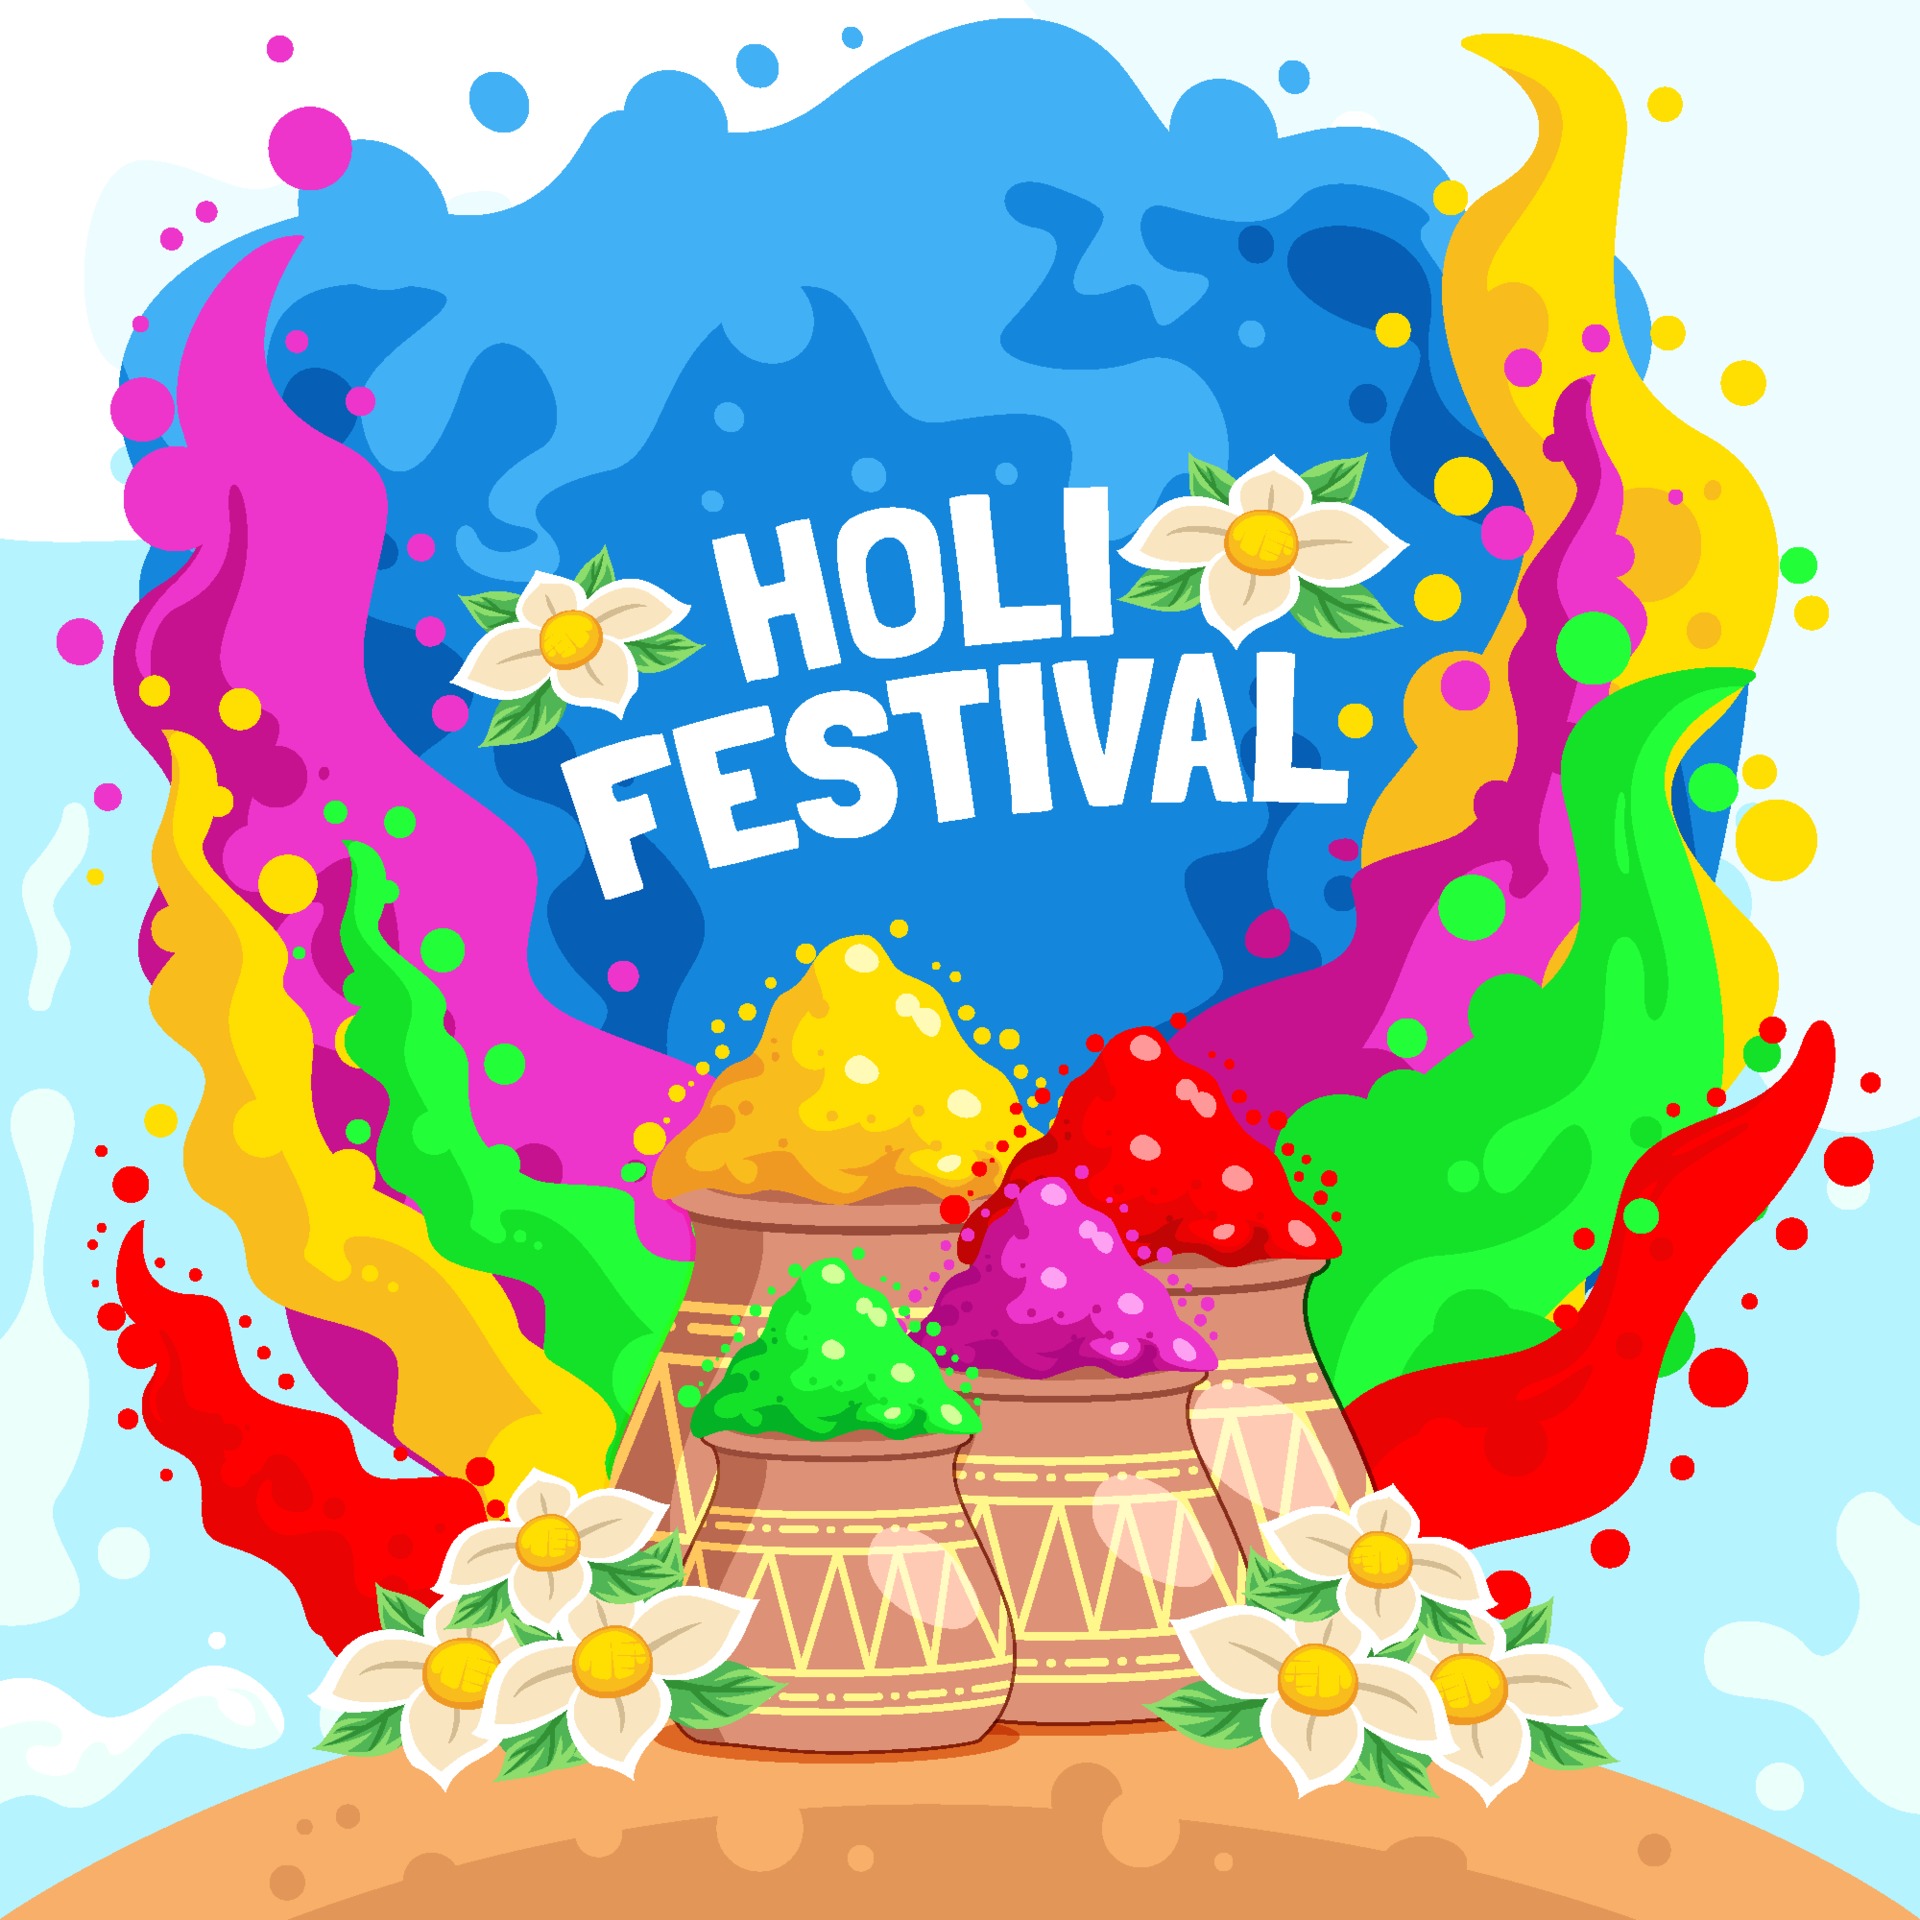 Details 100 holi festival background